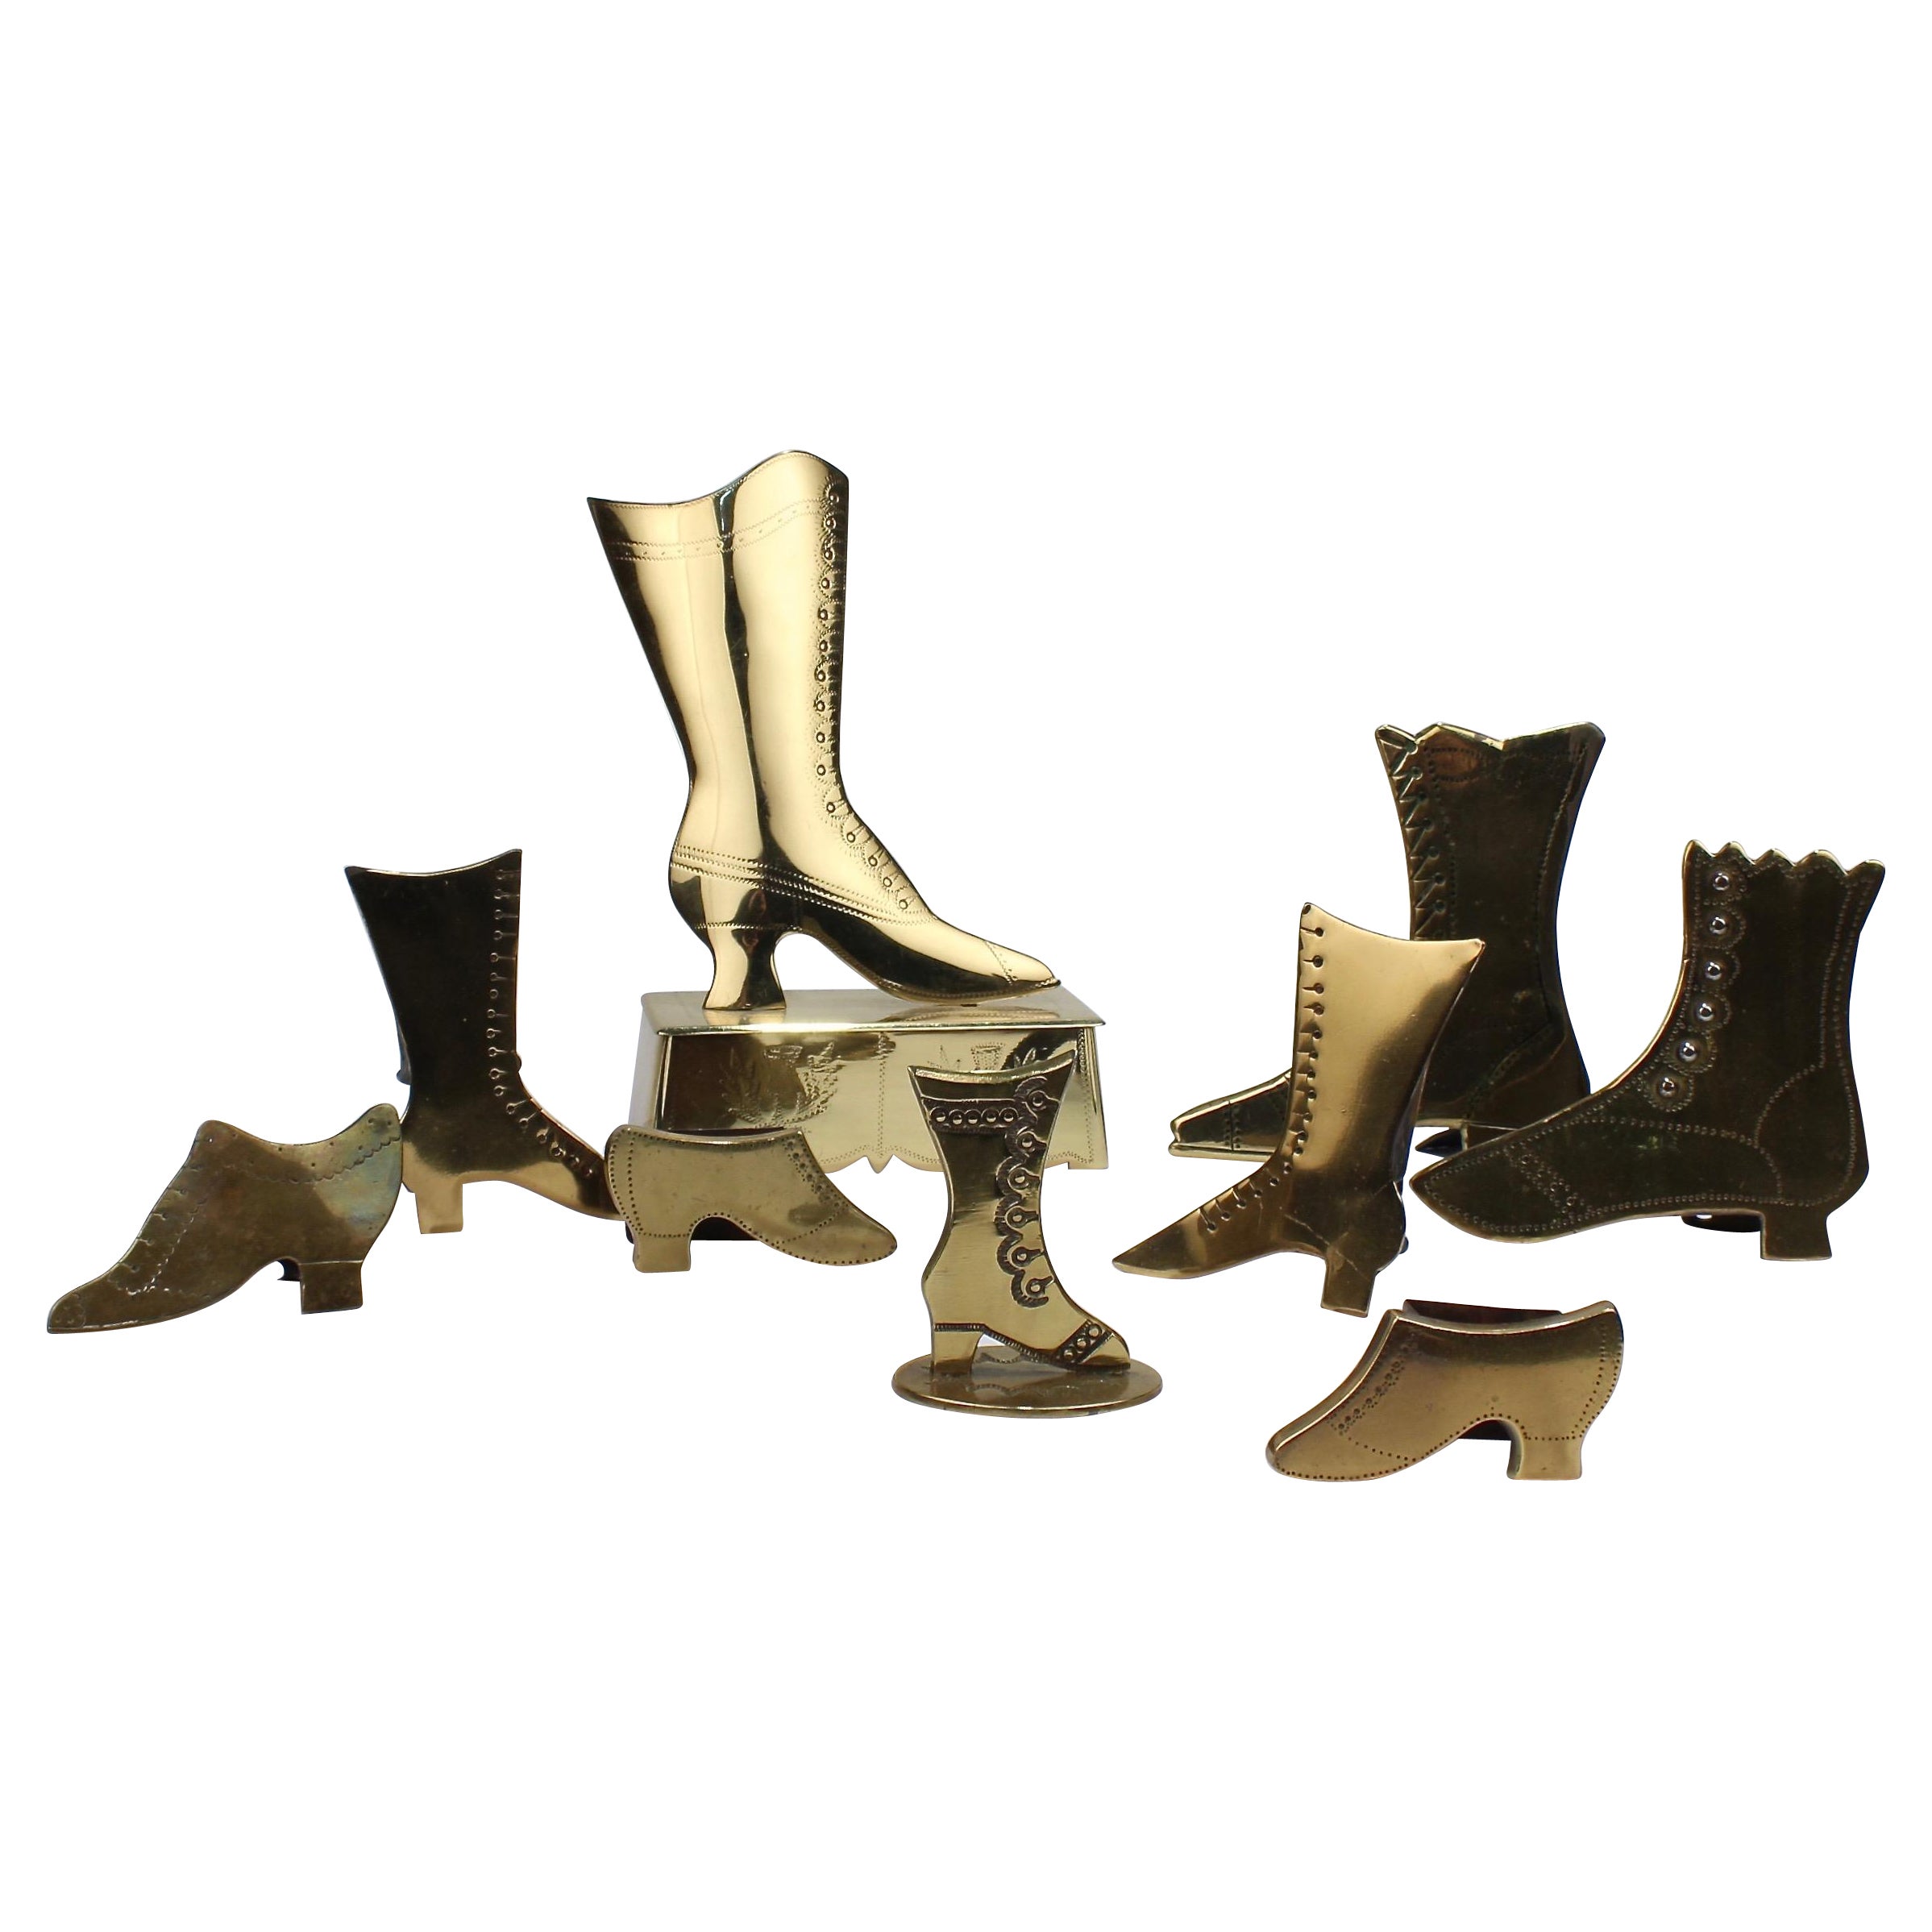 The Collective of 9 Folky English Victorian Shoe and Boot Mantel Ornaments (ornements de cheminée en laiton pour chaussures et bottes)